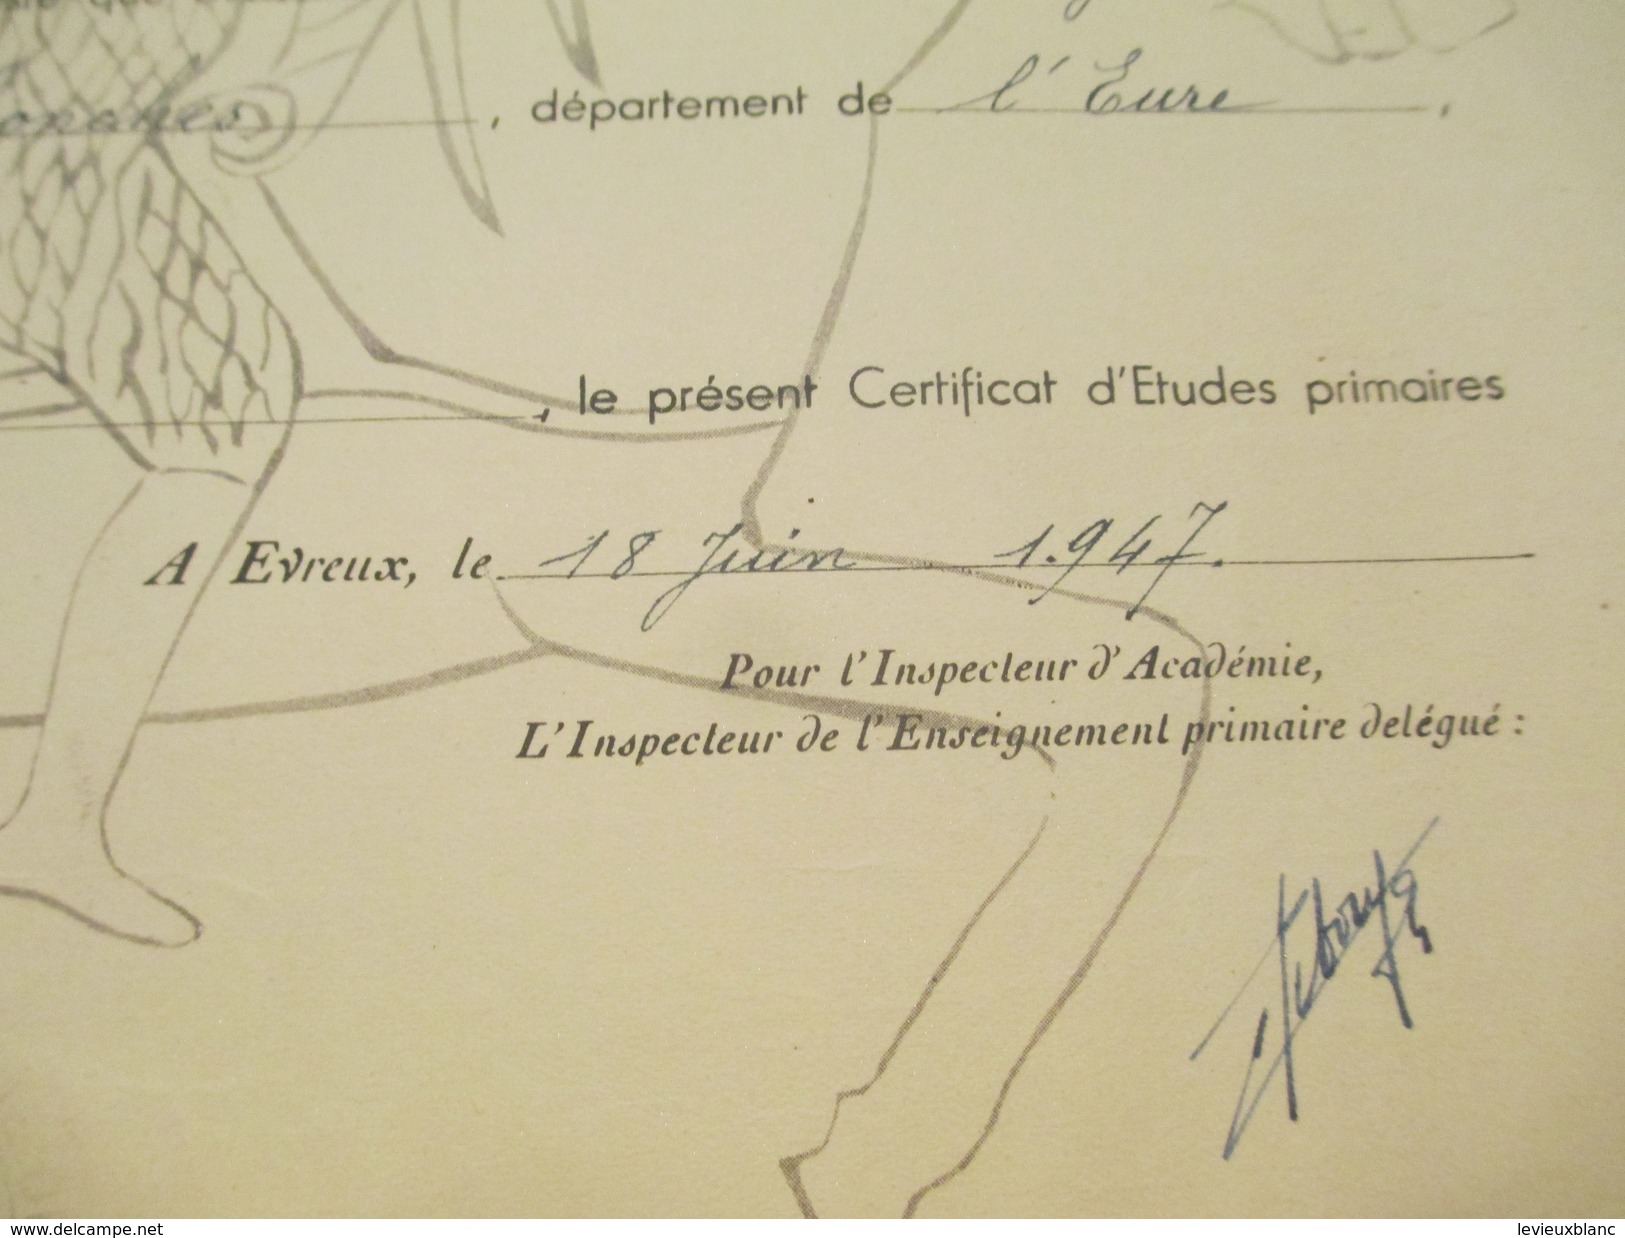 Diplôme De Certifcat D'Etudes Primaires/Education Nationale /Académie CAEN/Giséle MARTIN/Eure /1947          DIP131 - Diploma & School Reports